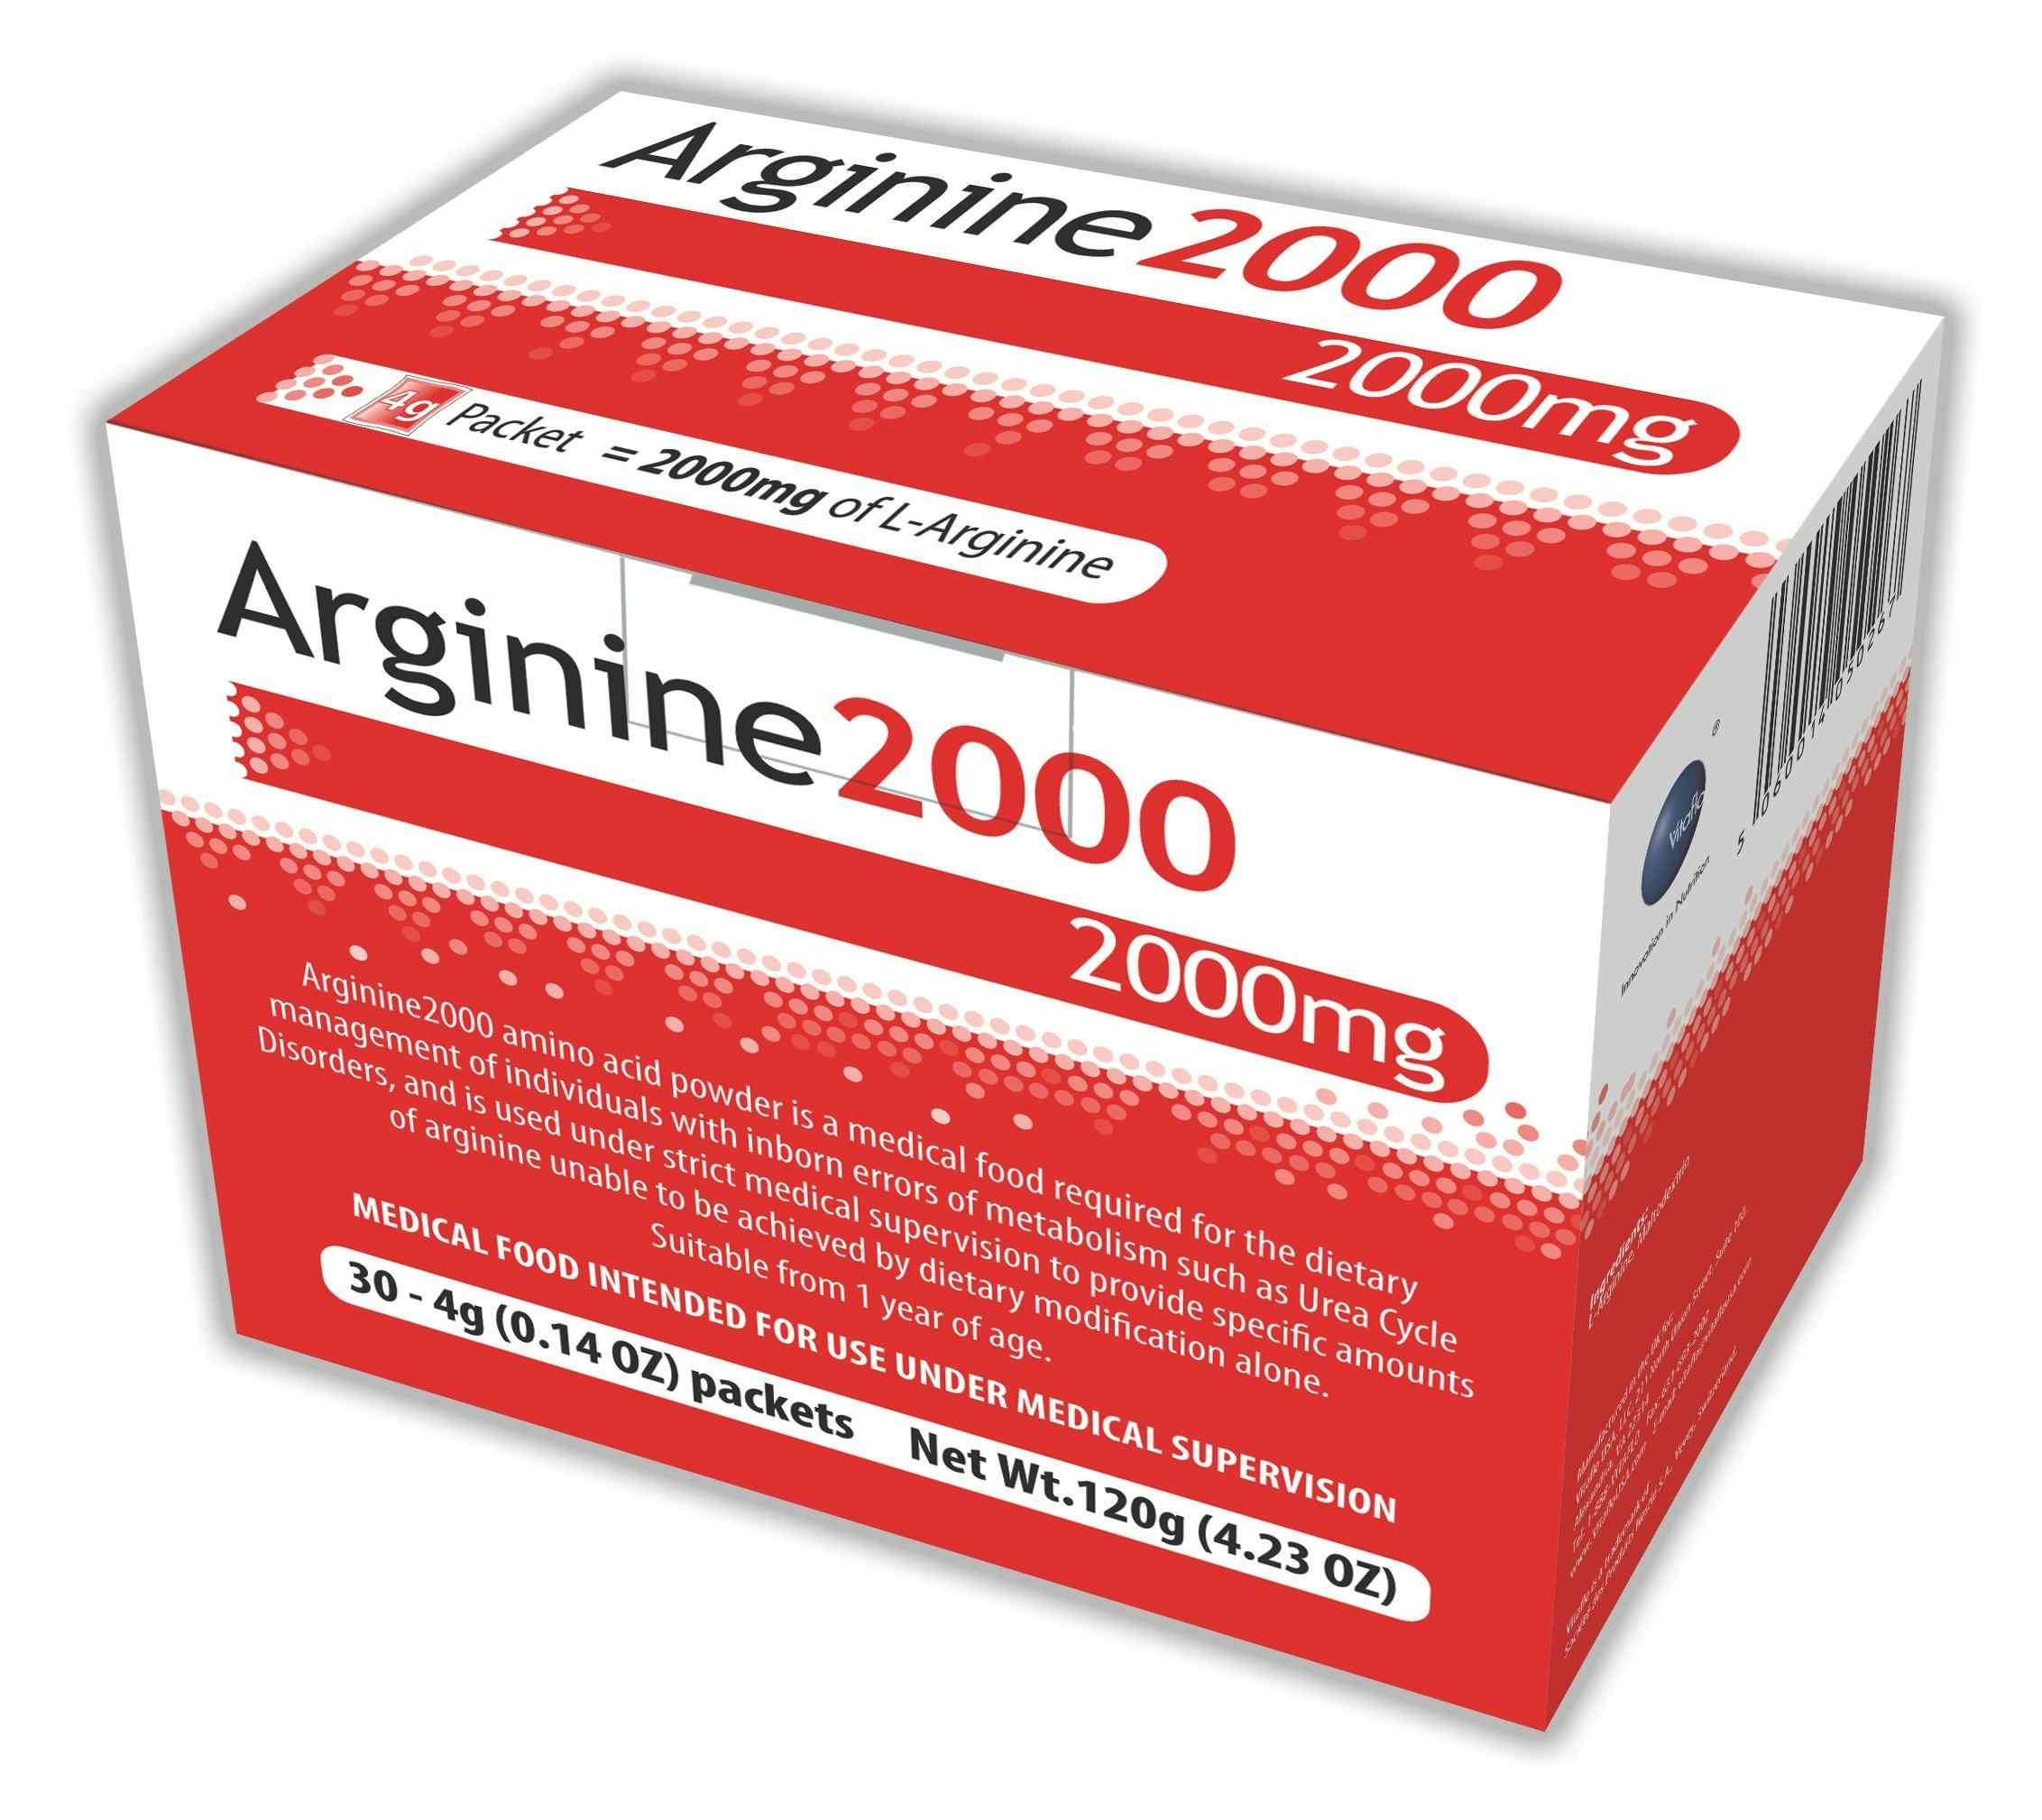 Vitaflo Arginine 2000 Amino Acid Oral Supplement Powder, Unflavored, 4g Packet, 50267, 1 Each